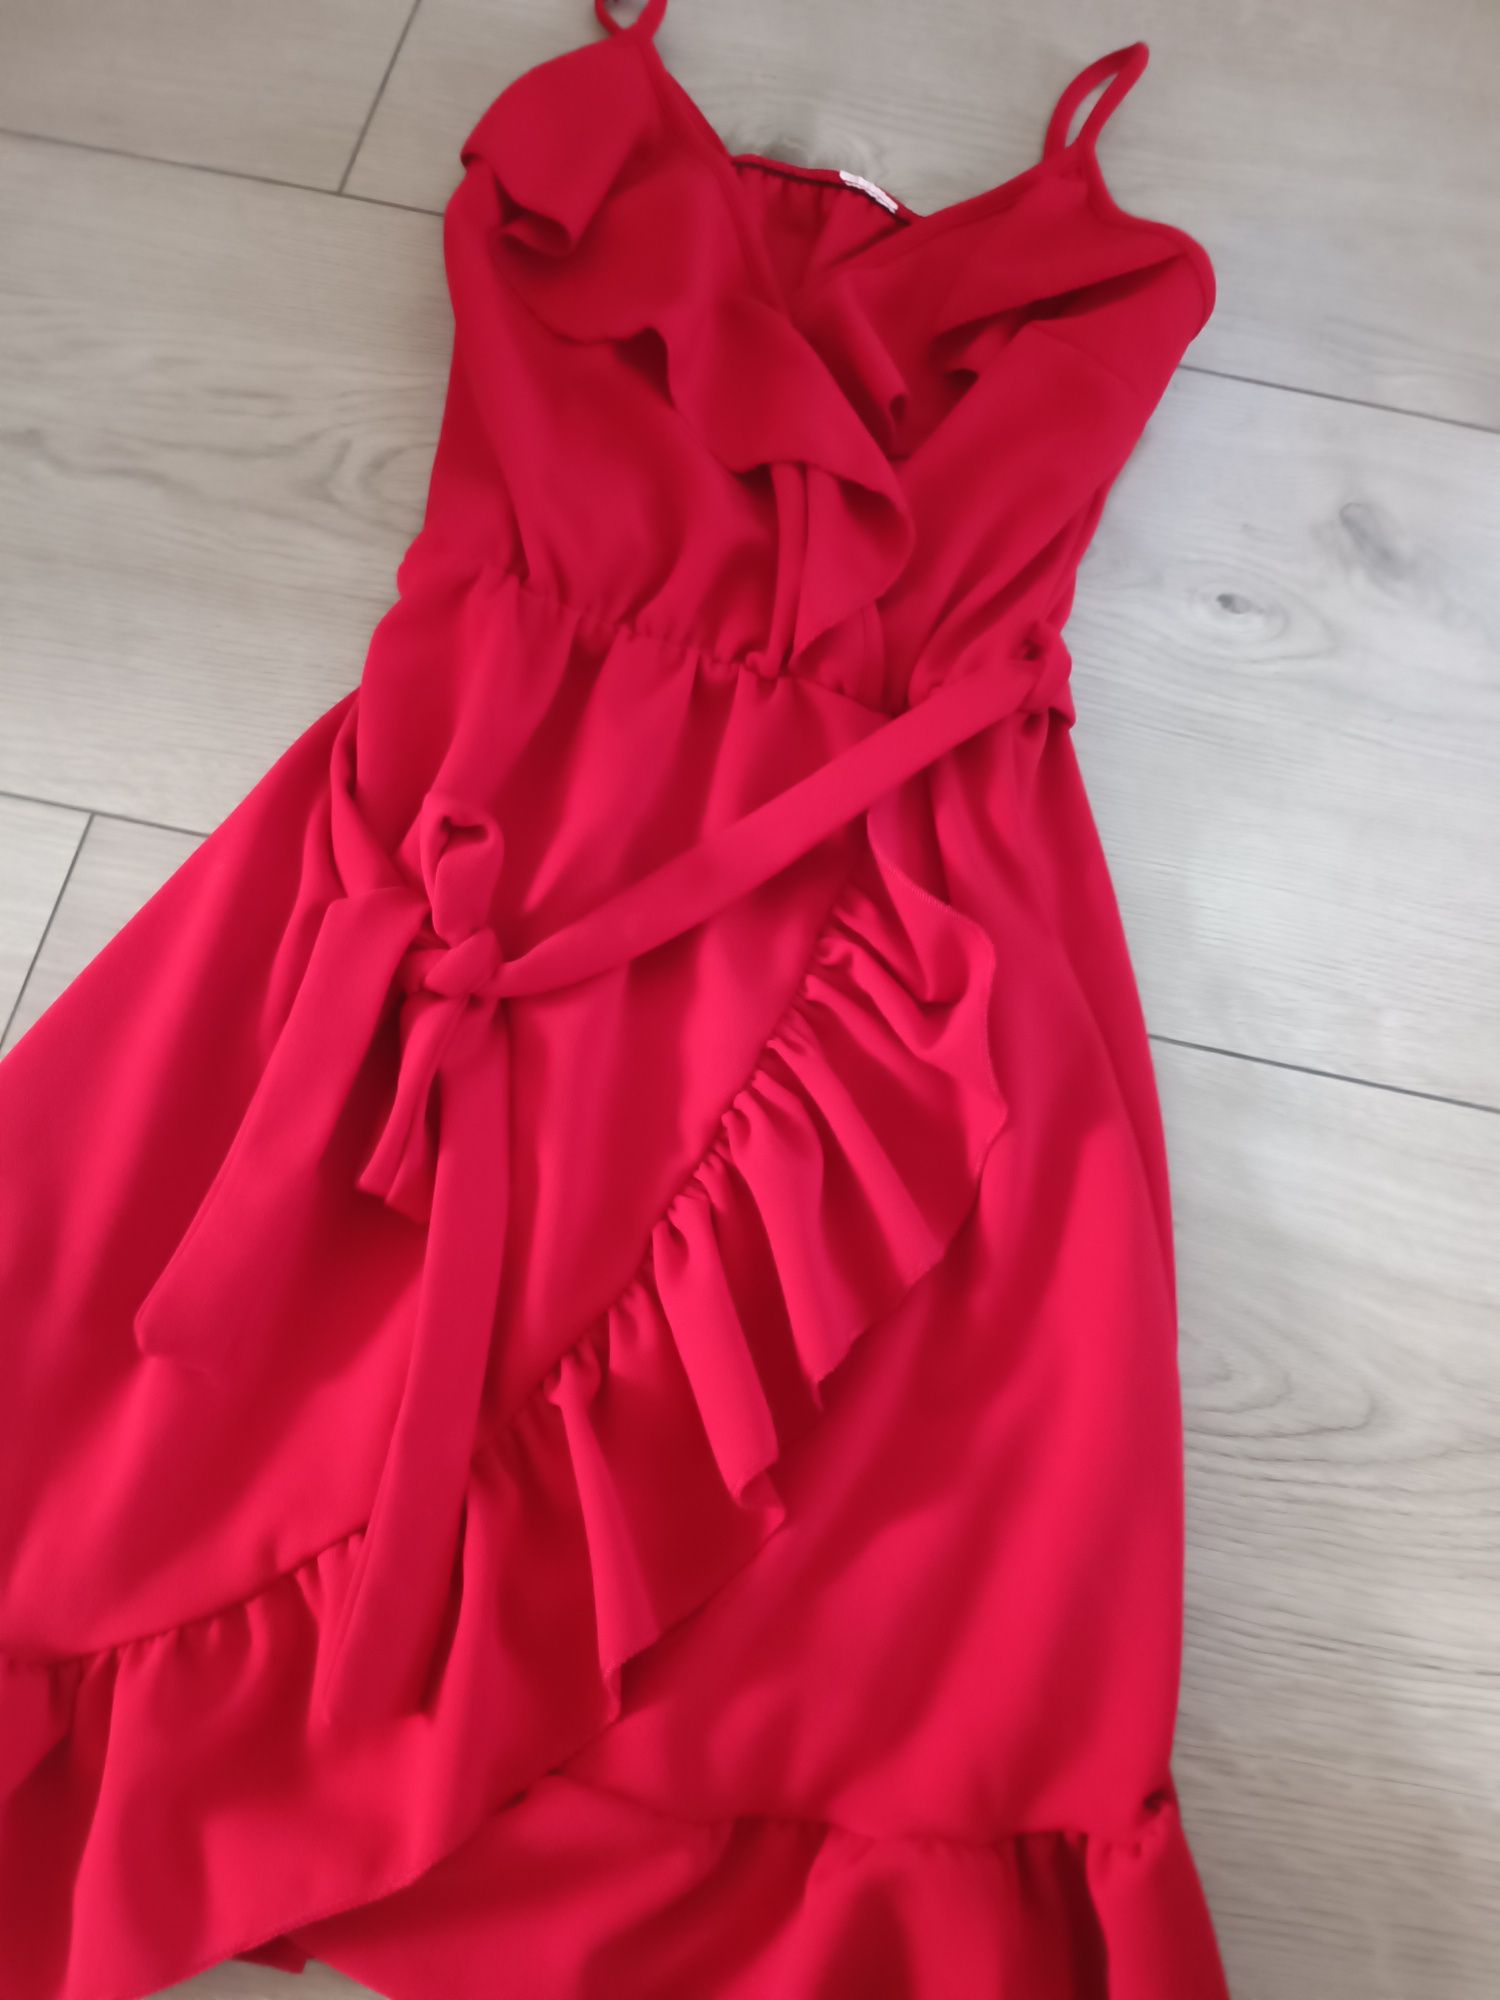 Czerwona sukienka damska